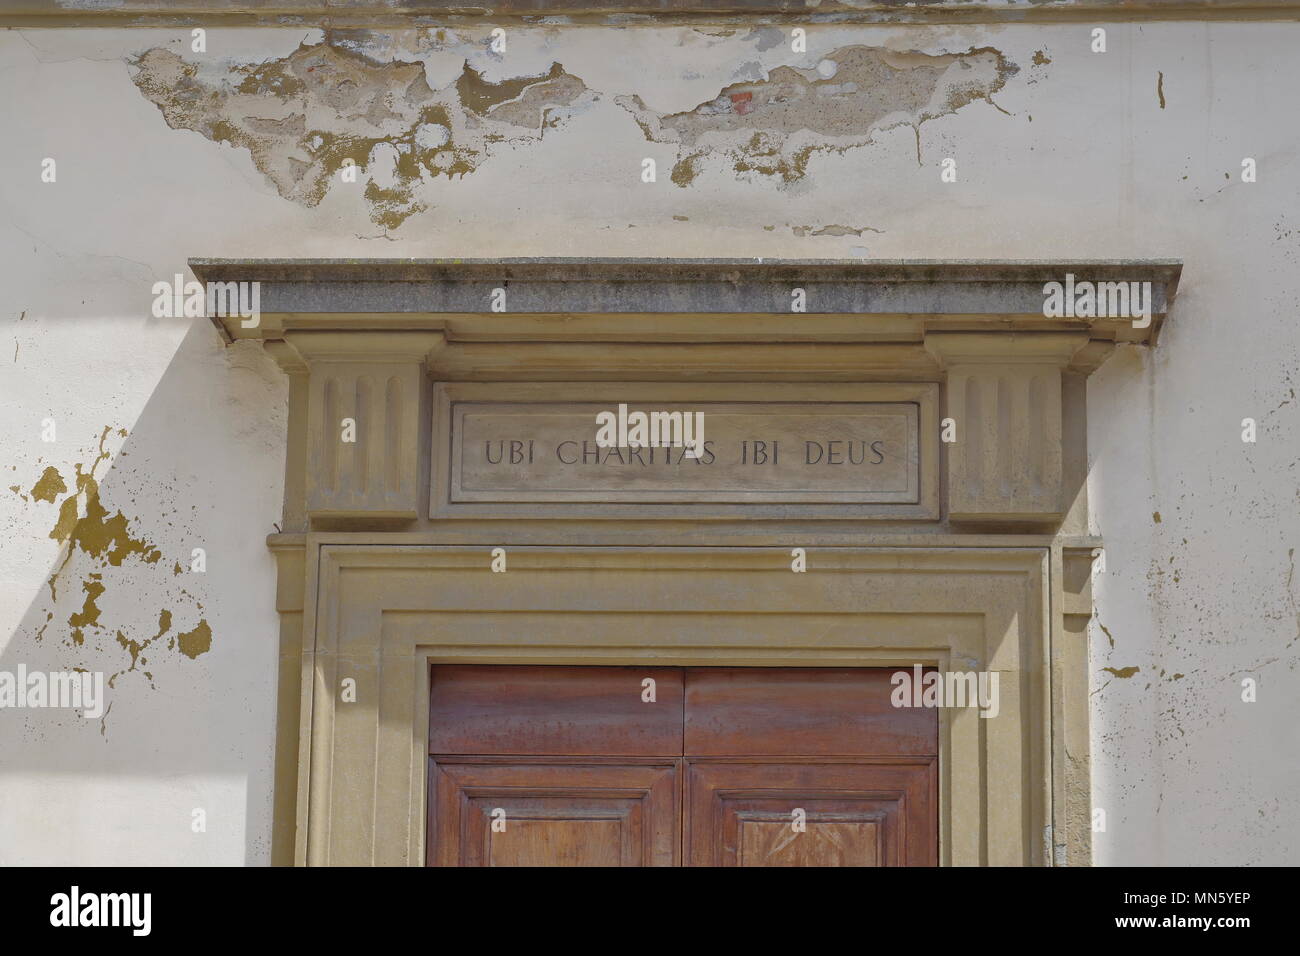 Inscription ubi caritas Iesus ibi i. e. Où est charitas il y a Jésus sur le portail d'une église à Florenc, Italie Banque D'Images